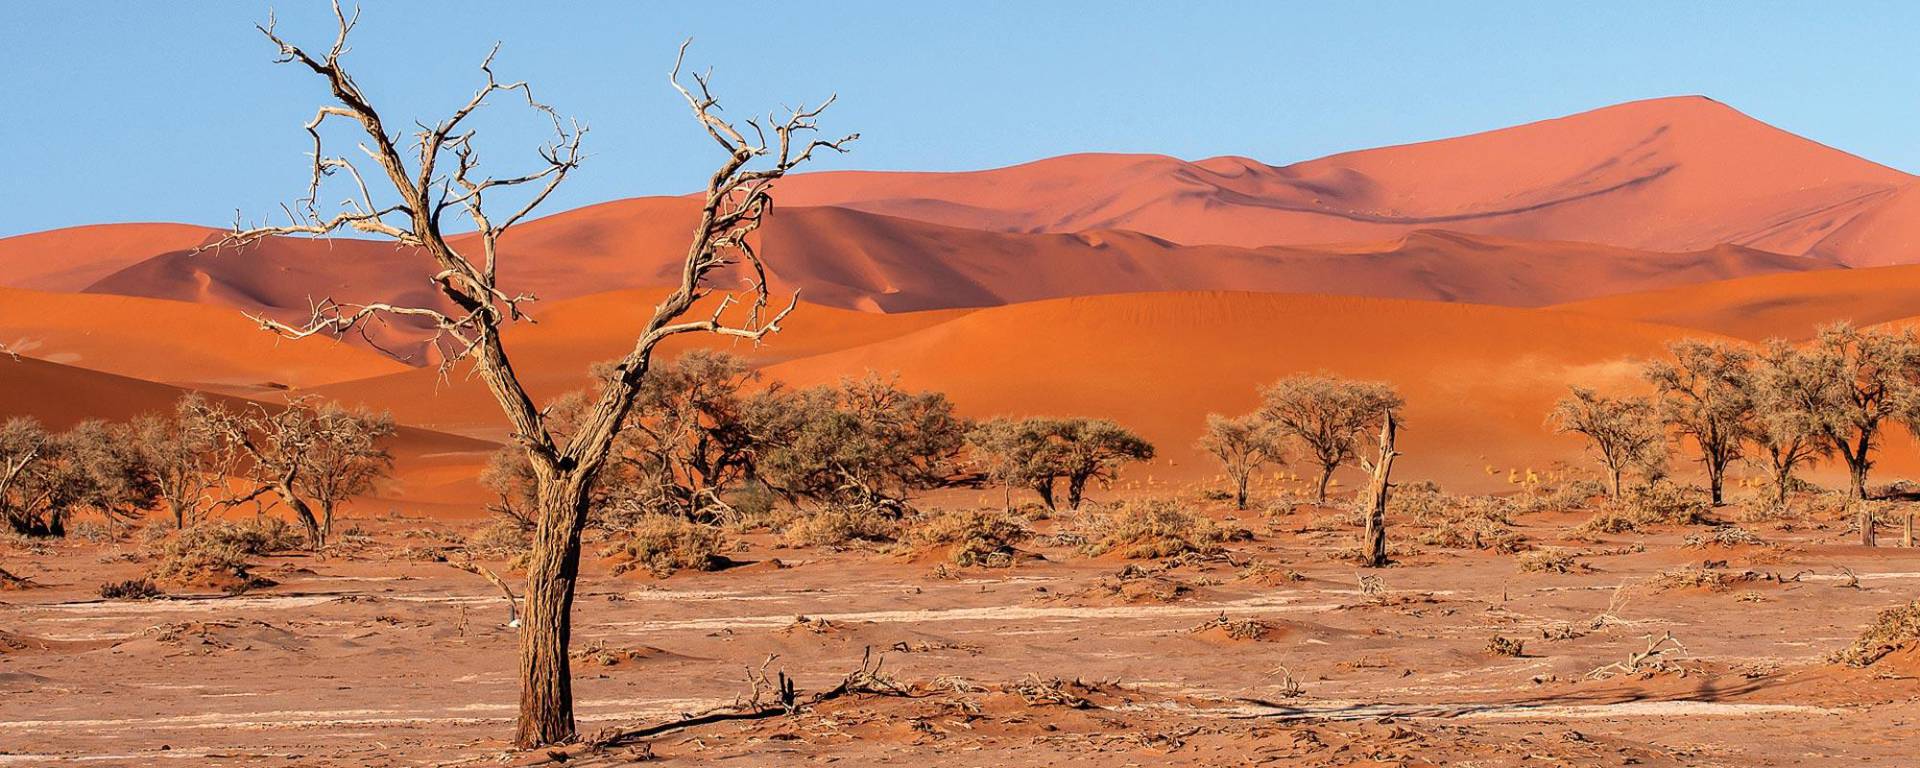 Die orangenen Dünen des Sossusvlei in der Namib